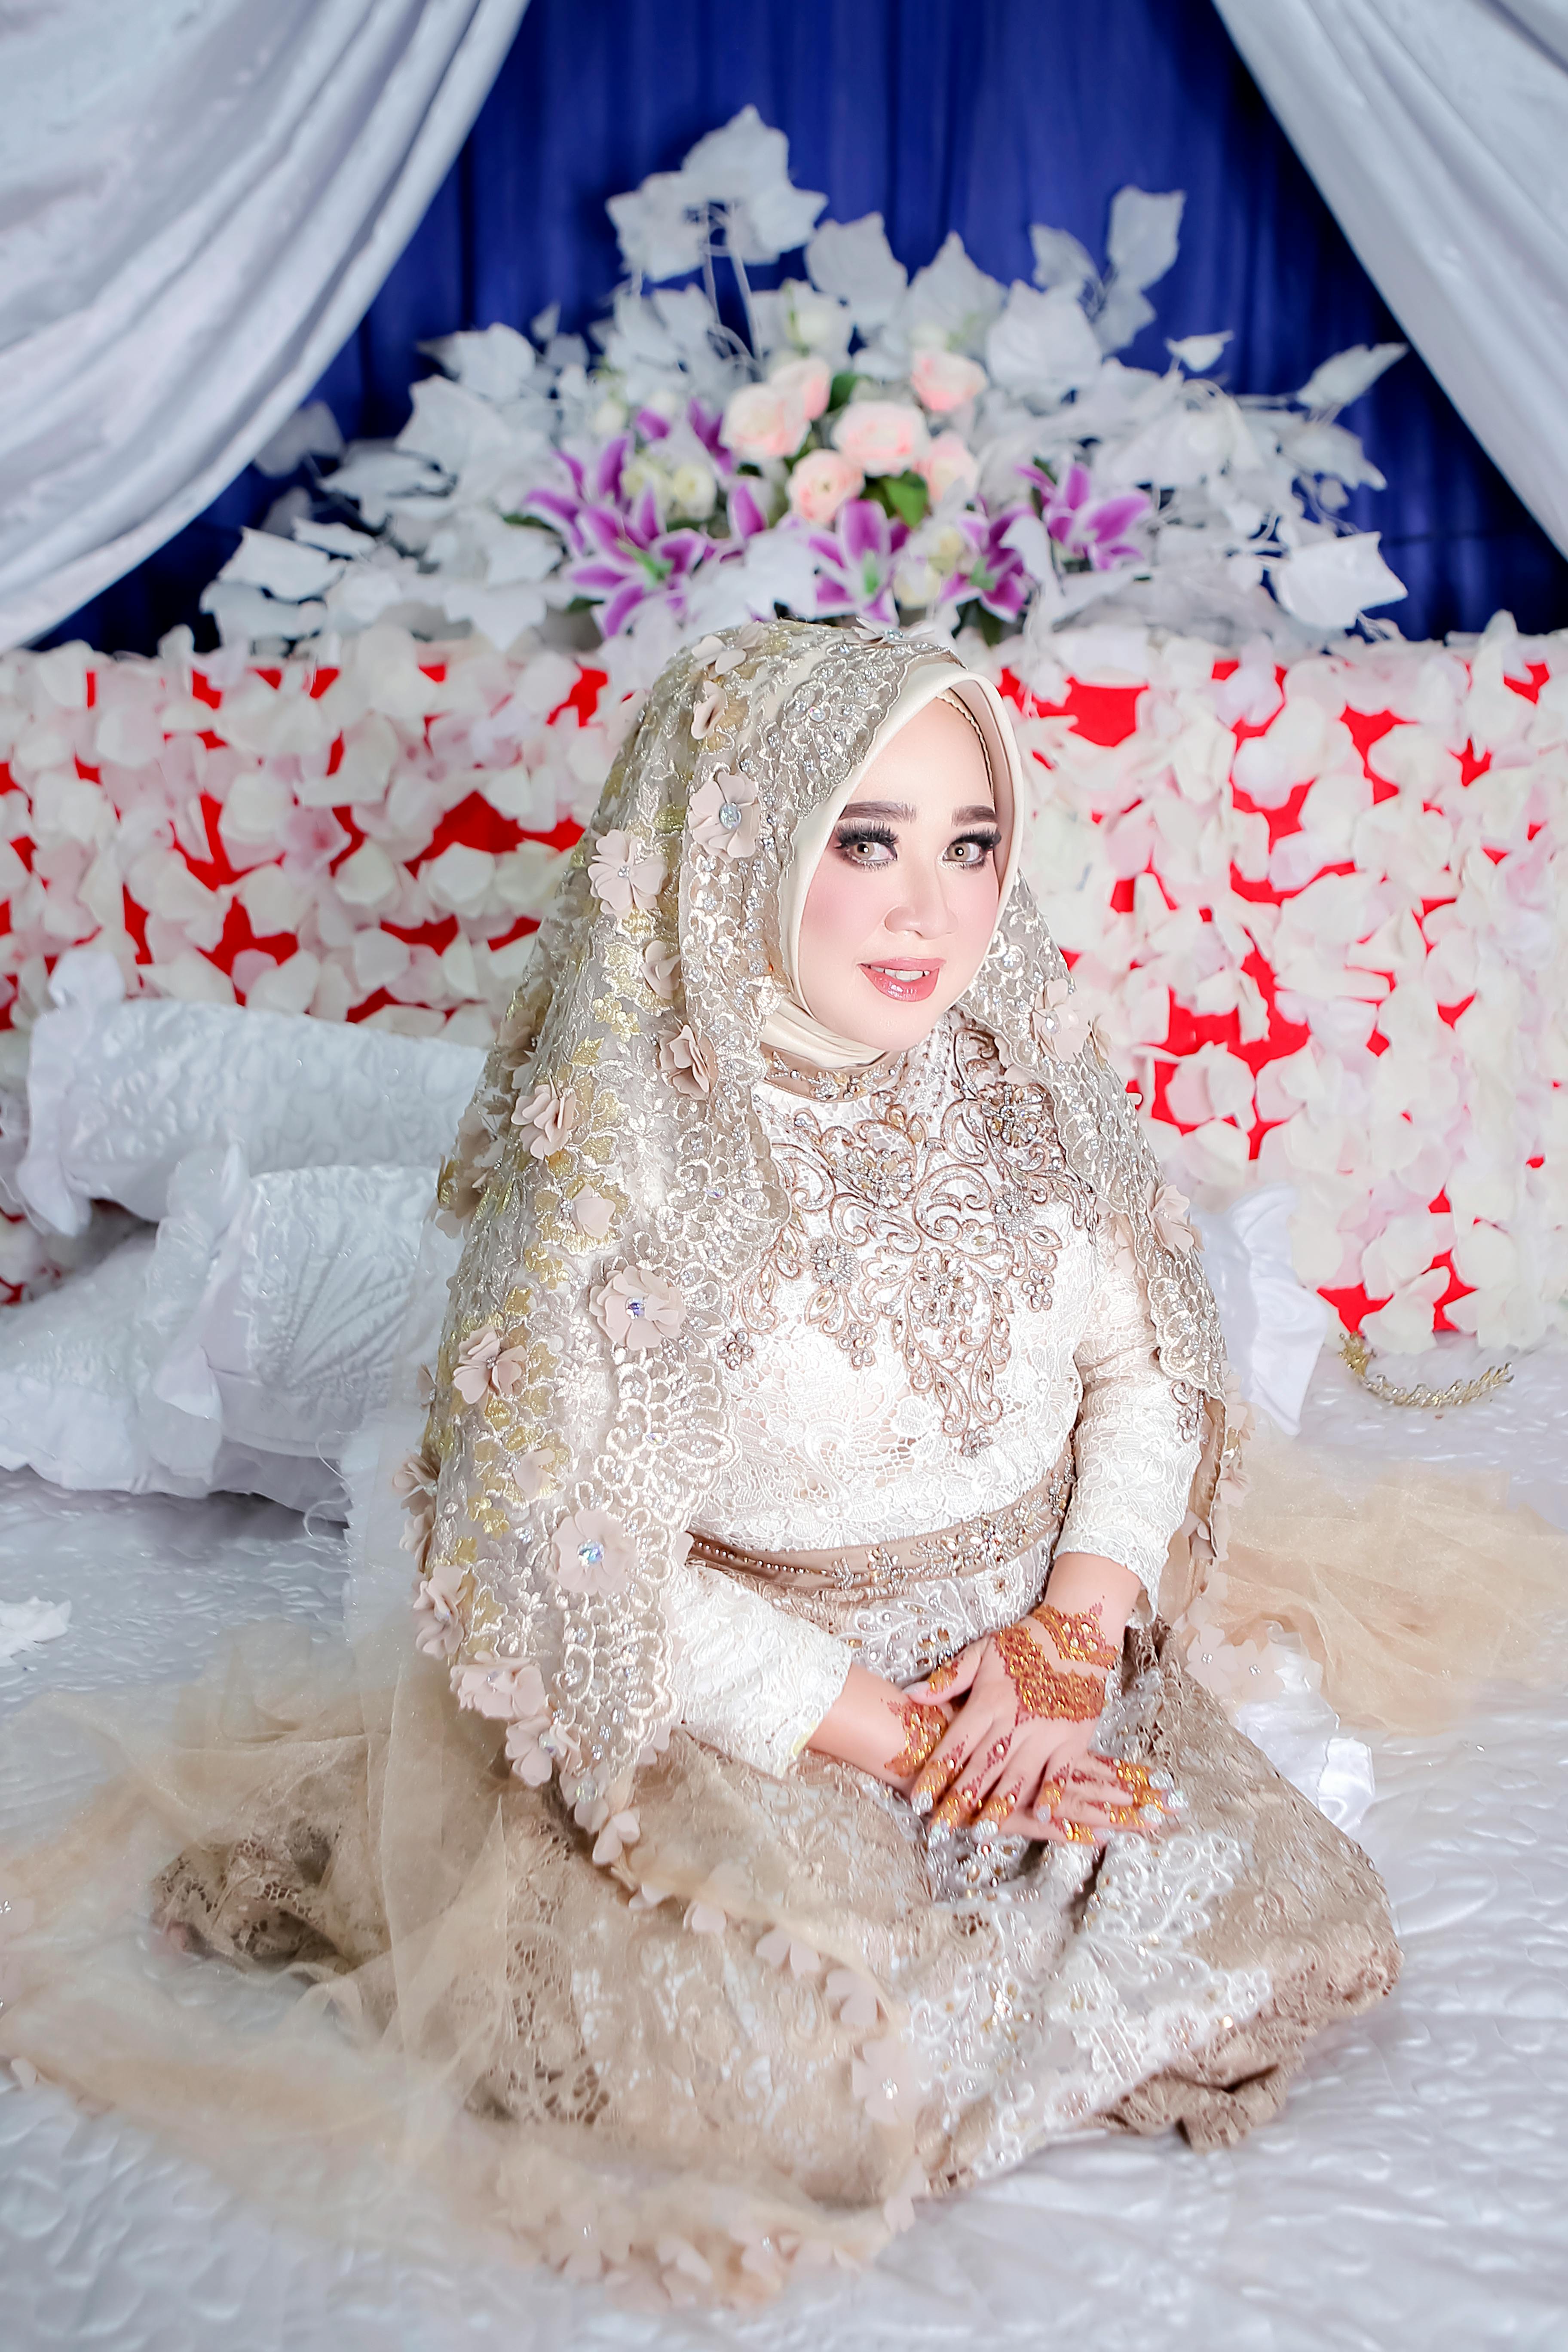 The Big Fat Indian Wedding | Muslim wedding dresses, Muslim wedding, Muslim  bridal